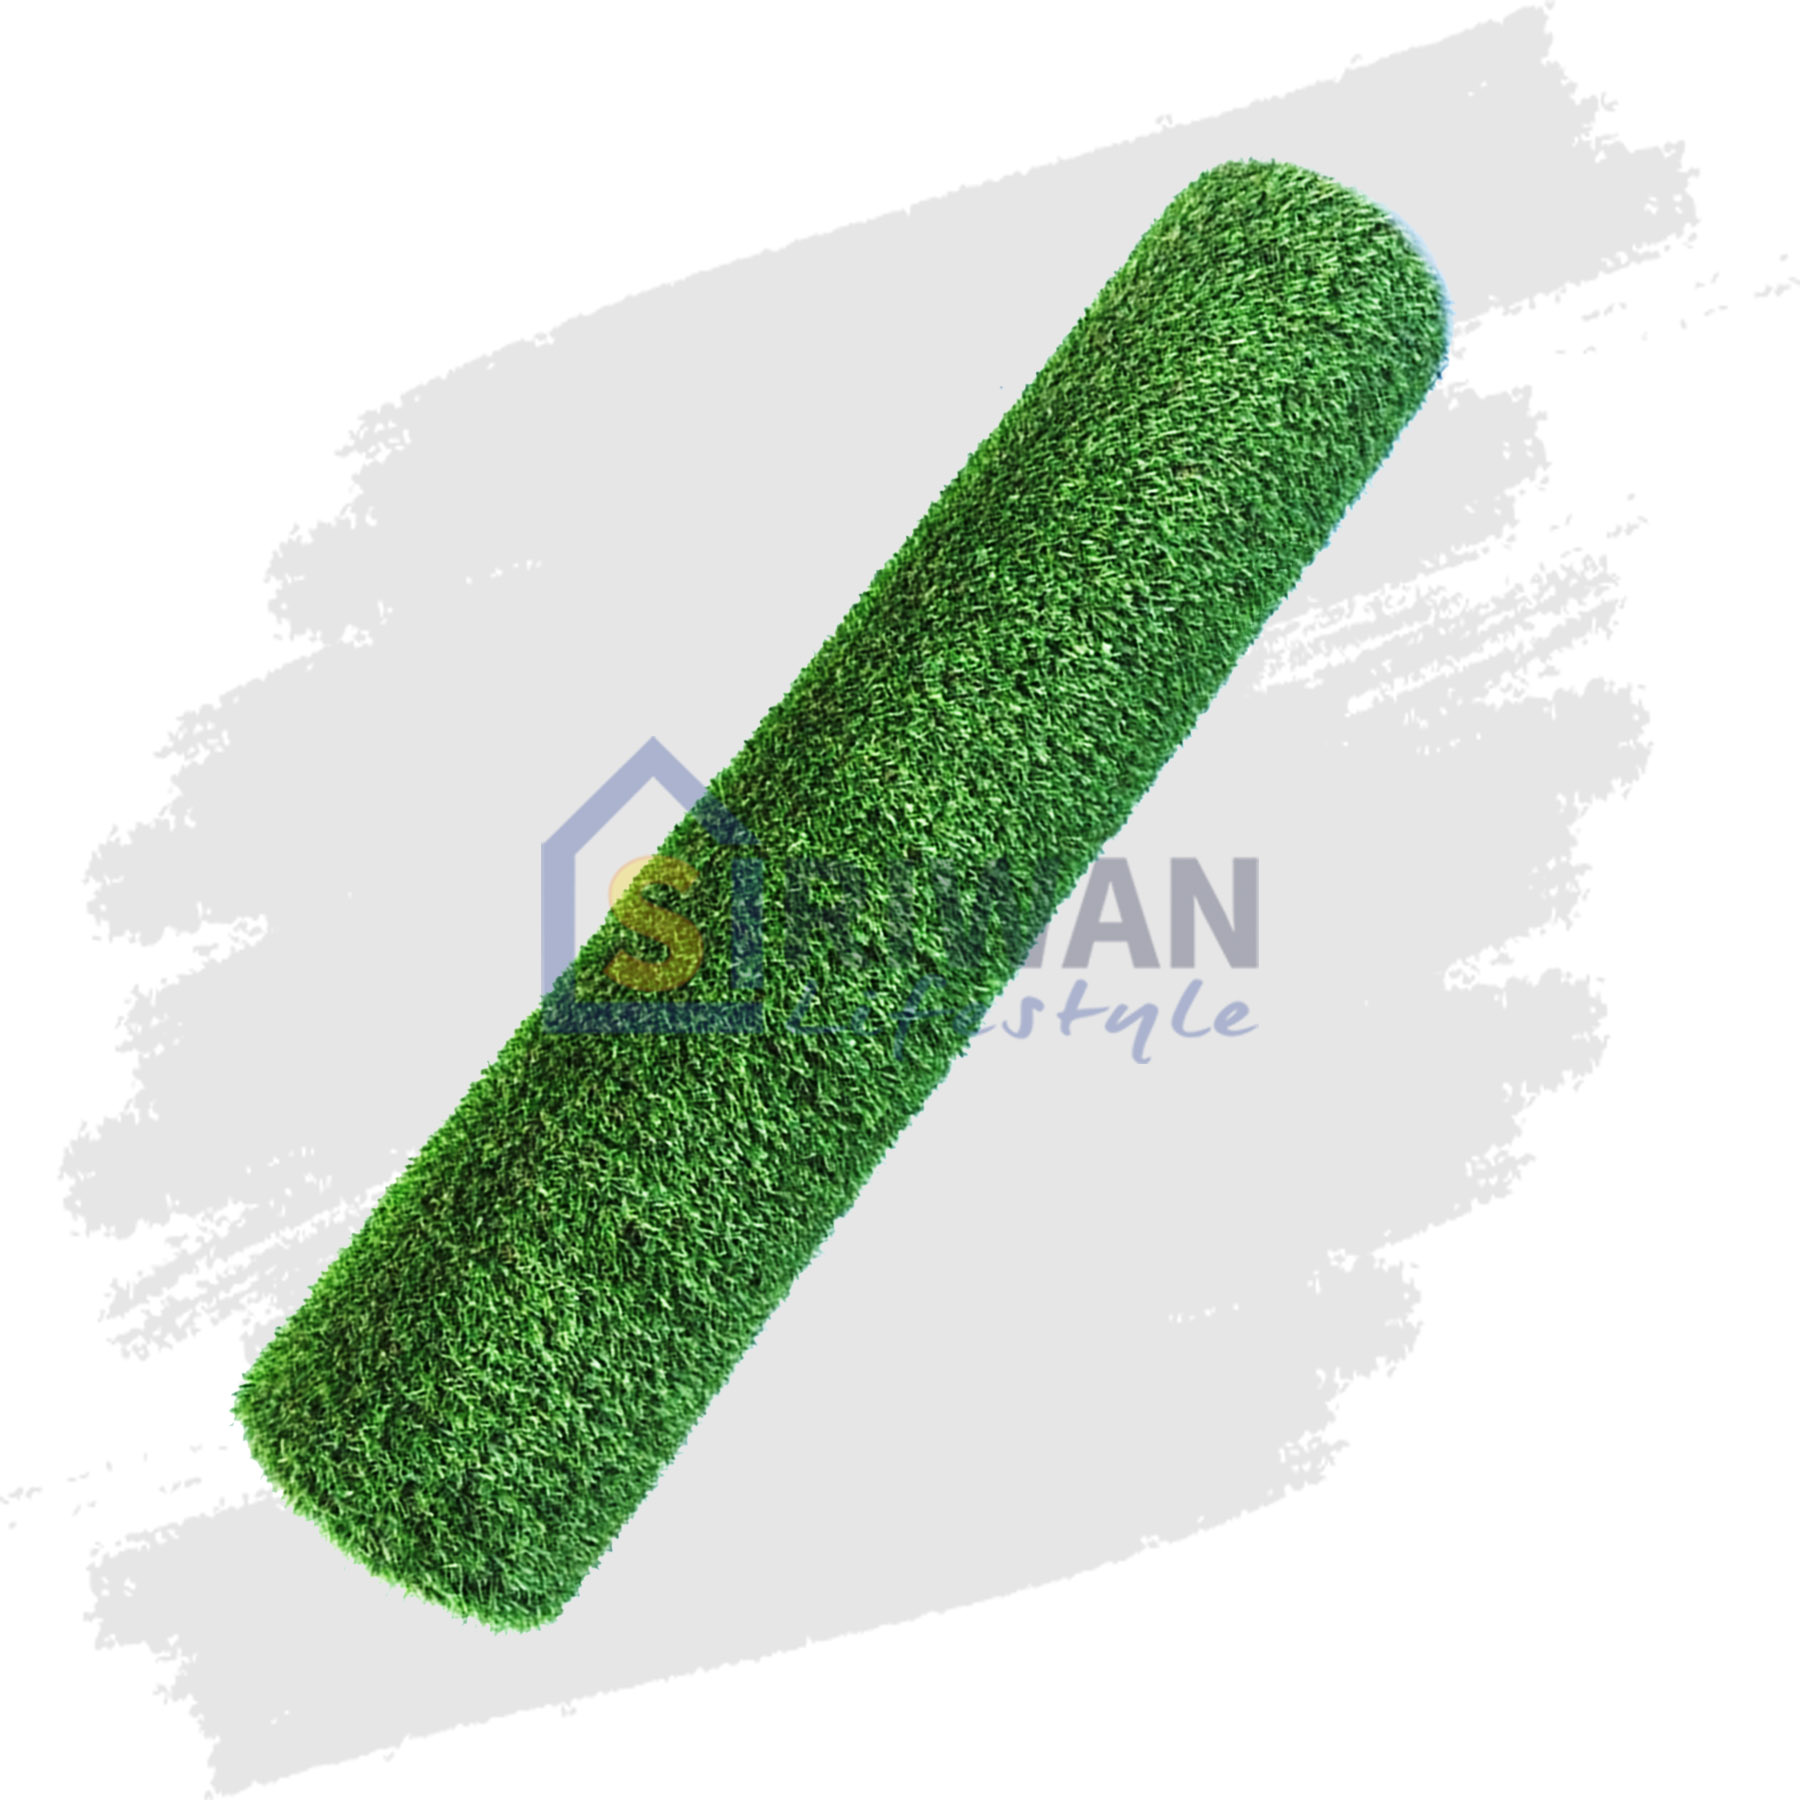 See Green หญ้าเทียม ปูพื้น ตกแต่งสวน ขนาด 1x2 เมตร ความสูงของหญ้า 20 mm.